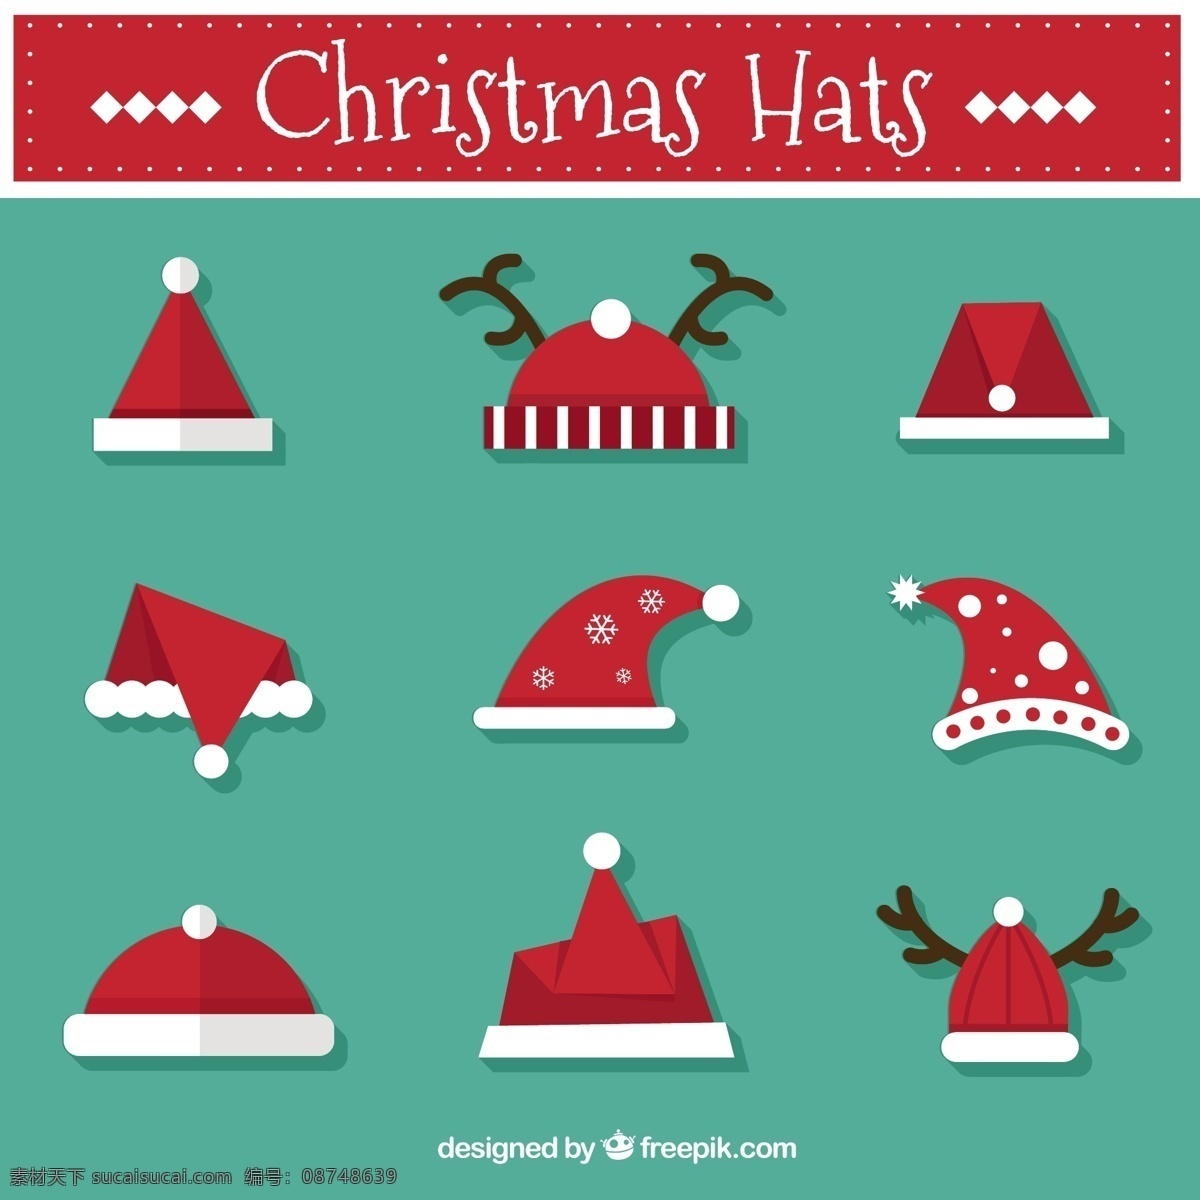 漂亮 圣诞 帽 收藏 圣诞节 圣诞快乐 冬天快乐 圣诞老人 克劳斯 可爱 节日 庆典 帽子 驯鹿 节日快乐 圣诞帽 季节 快乐 十二月 青色 天蓝色